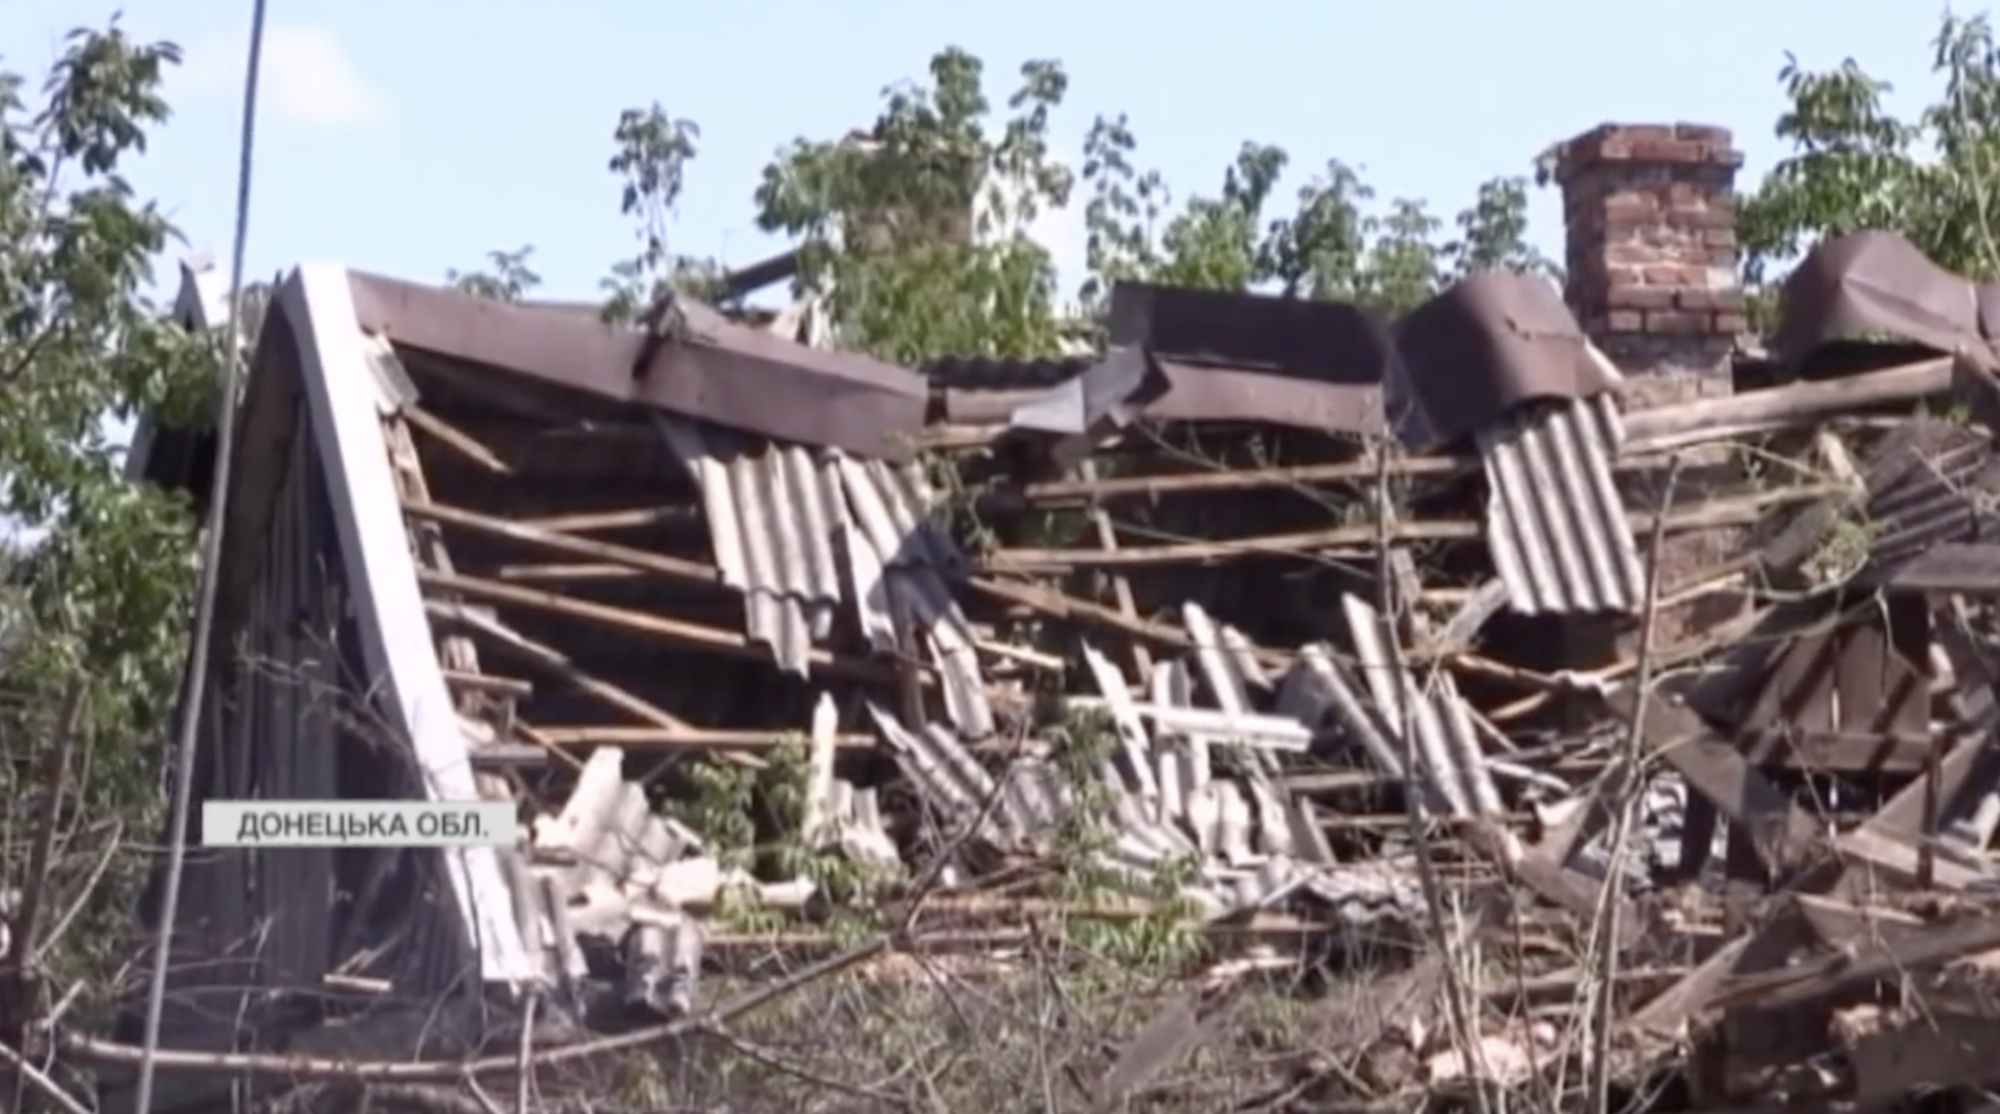 Разбитые дома и безлюдные улицы: как выглядит прифронтовой поселок Нью-Йорк на Донбассе. Видео